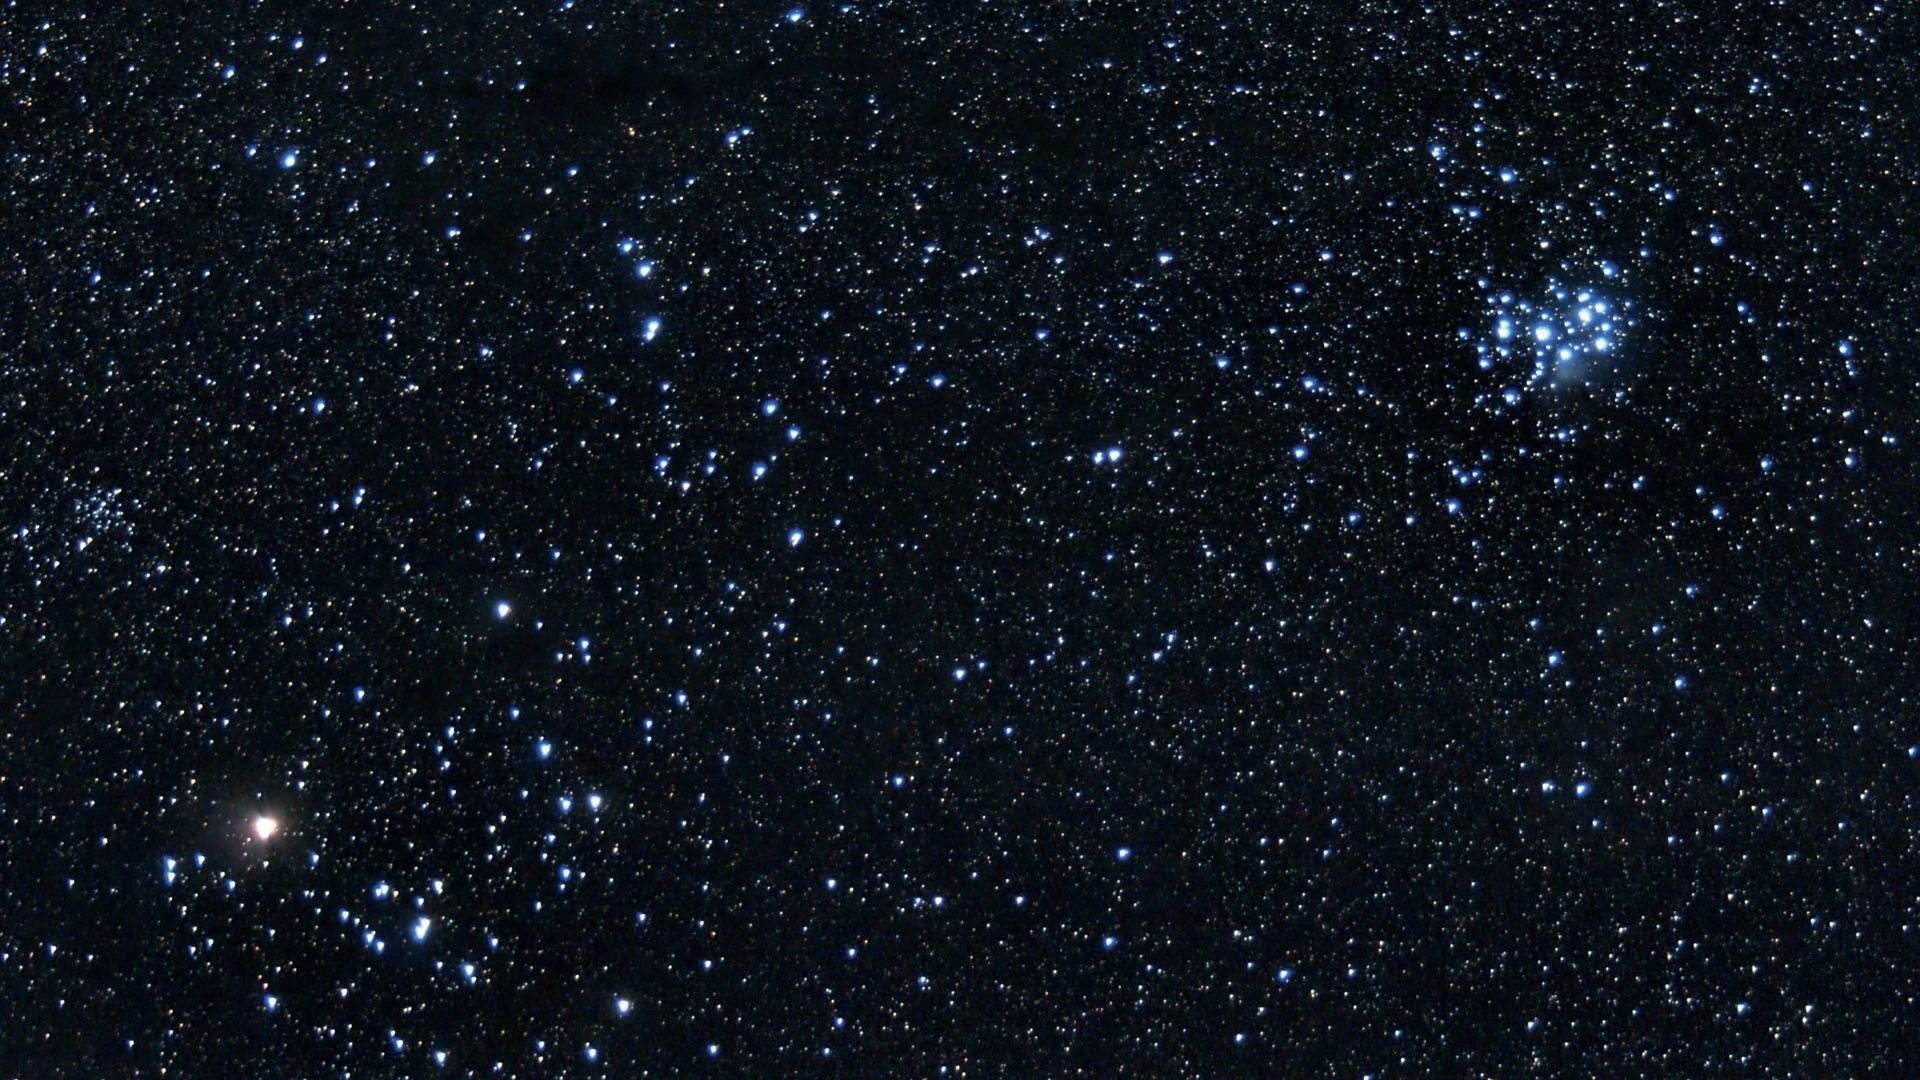 Oltre alle Pleiadi (a destra nell’immagine) e alle Iadi con Aldebaran (la stella luminosa a sinistra), nel Toro si possono trovare tanti altri ammassi stellari, come NGC 1647 (a sinistra, sopra Aldebaran). Marcus Degenkolbe